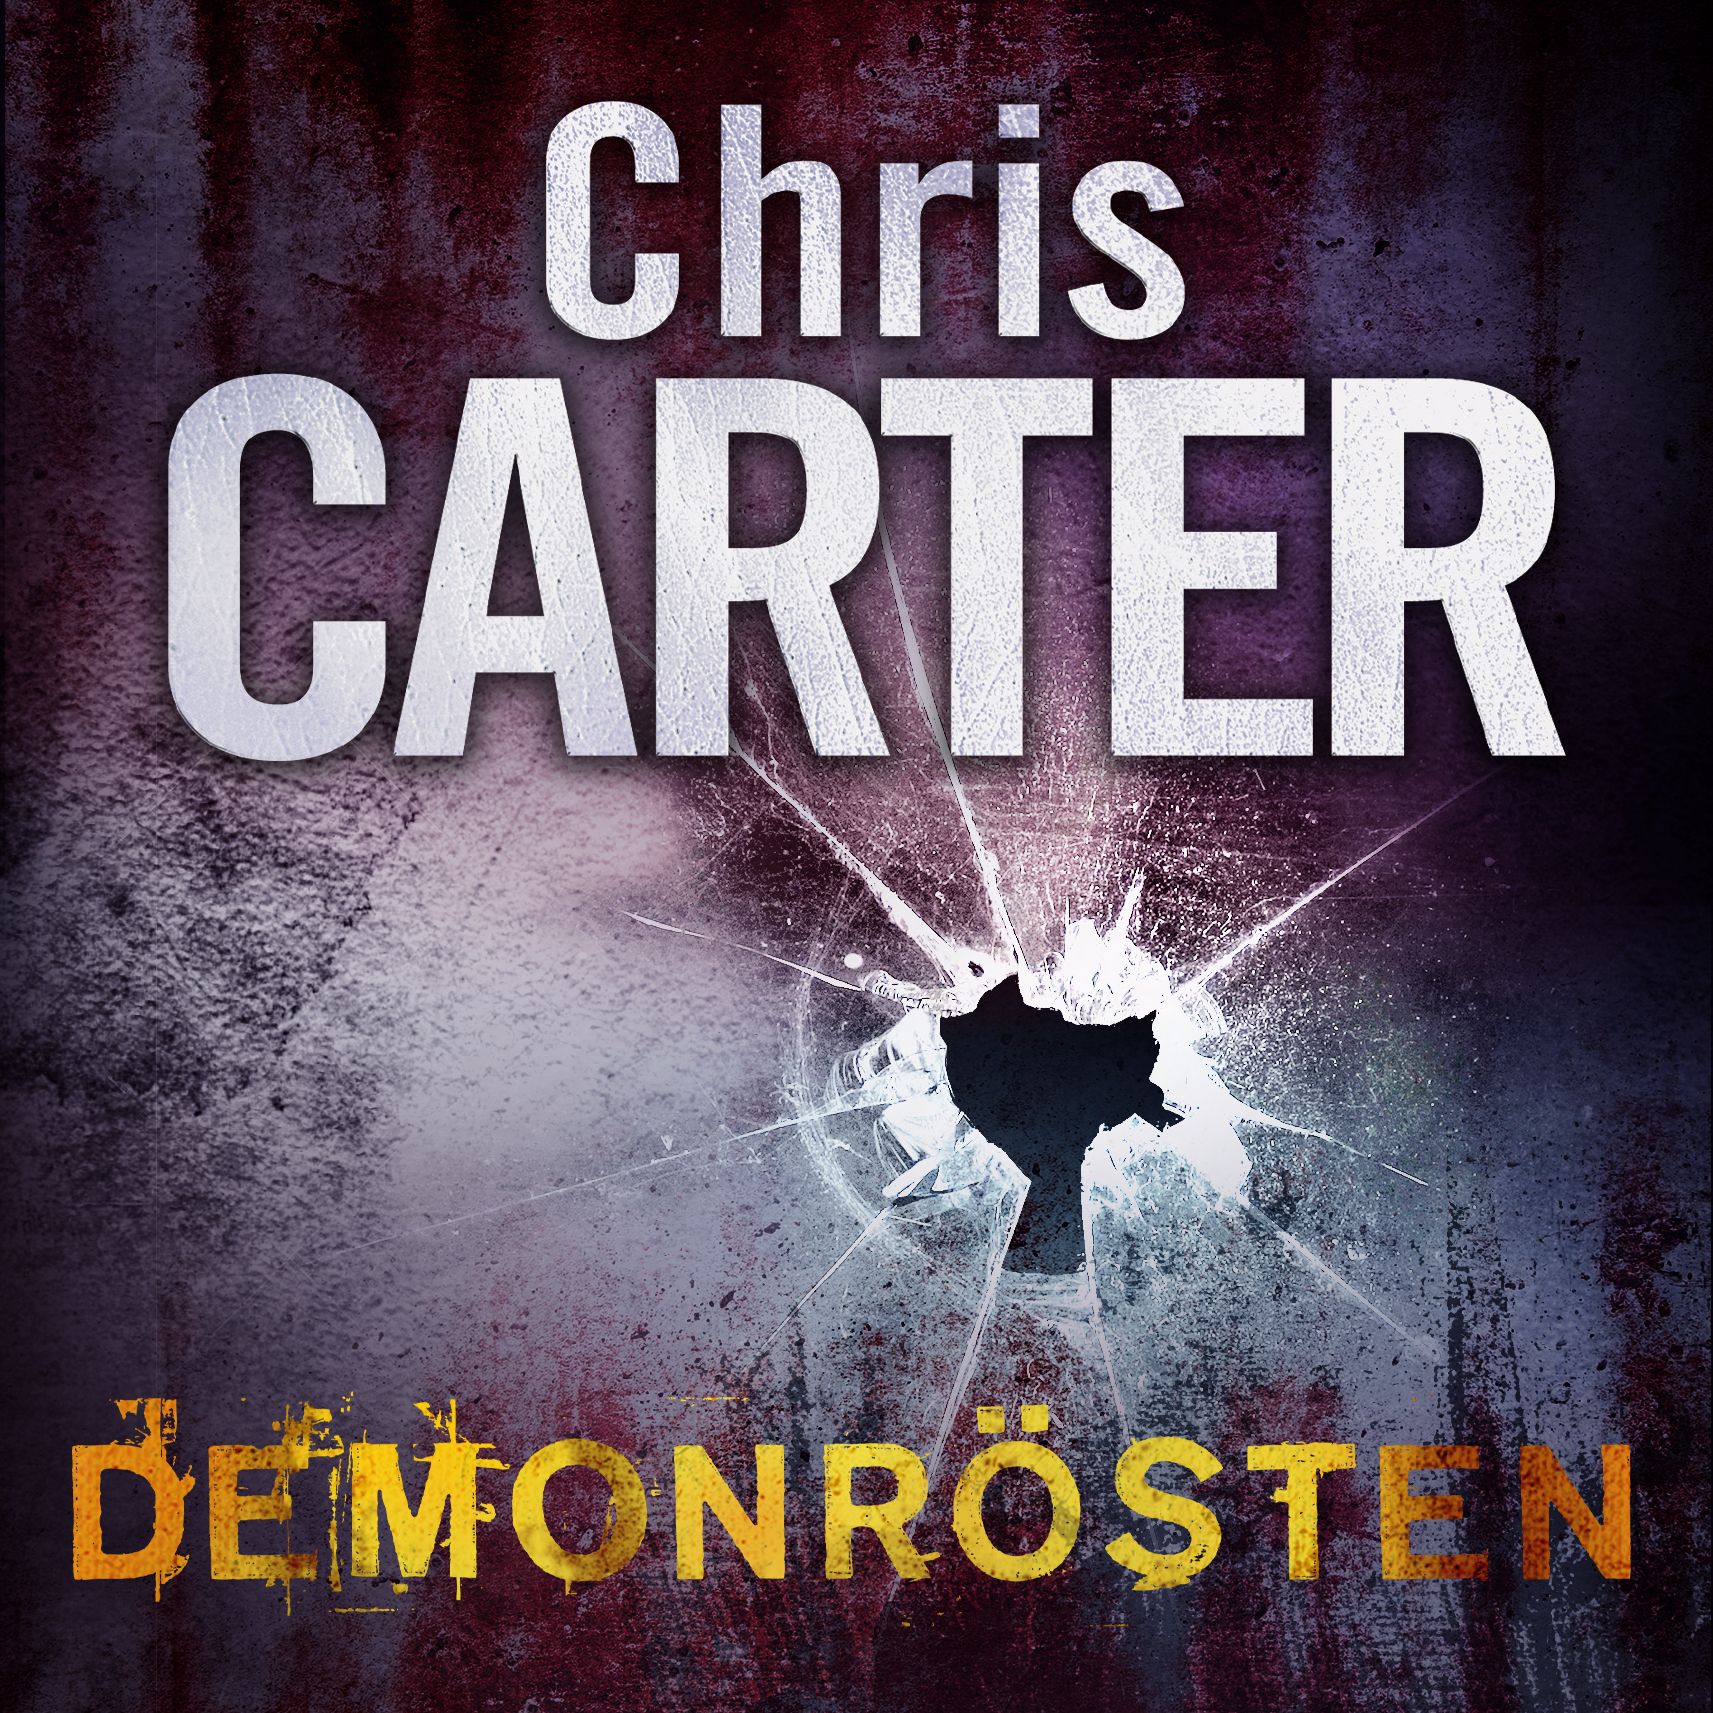 Demonrösten, ljudbok av Chris Carter